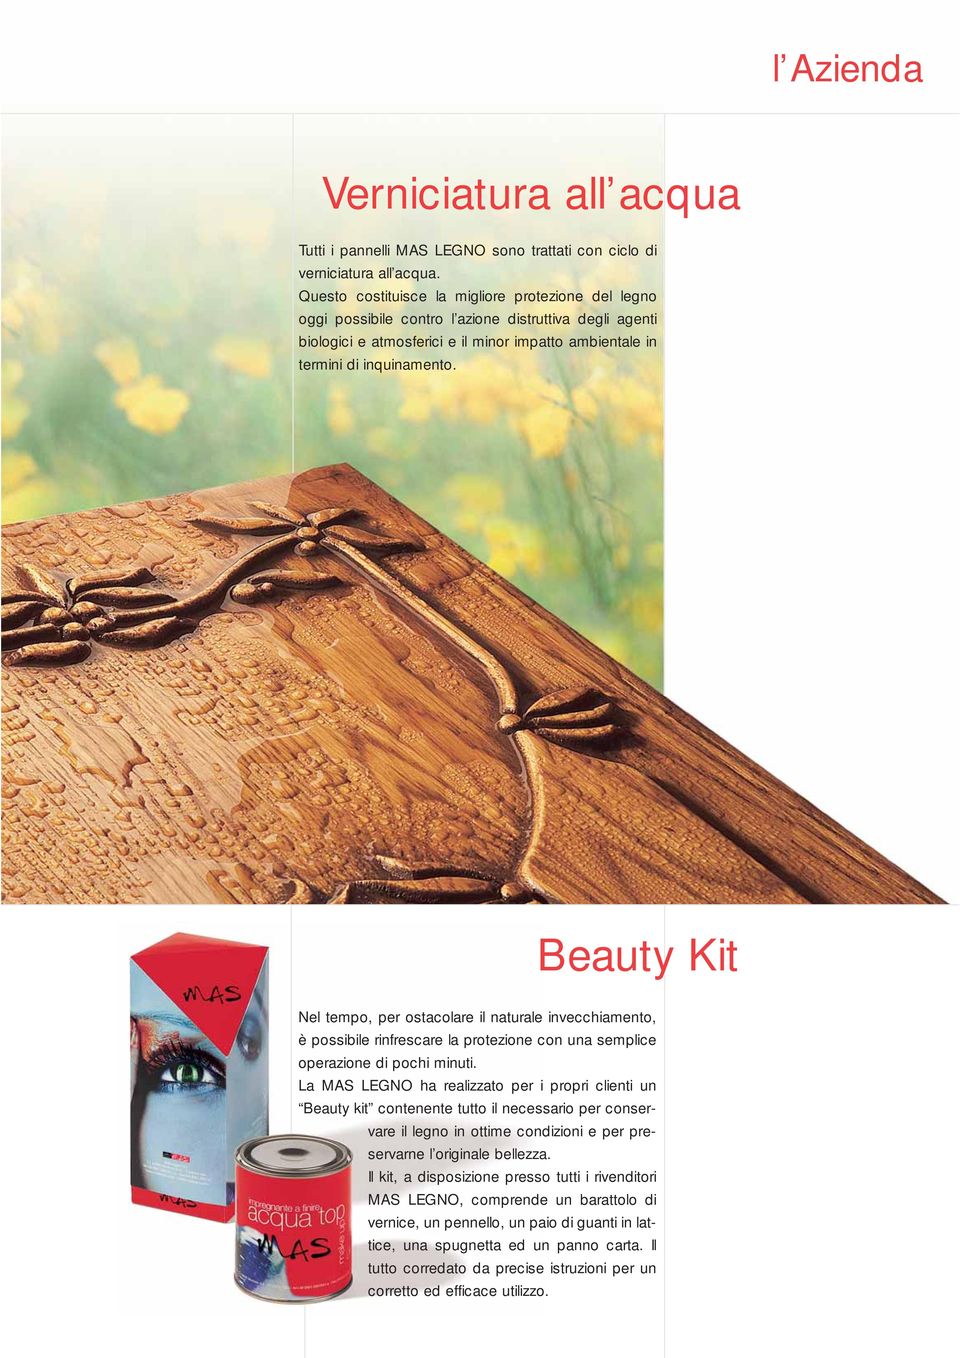 Beauty Kit Nel tempo, per ostacolare il naturale invecchiamento, è possibile rinfrescare la protezione con una semplice operazione di pochi minuti.